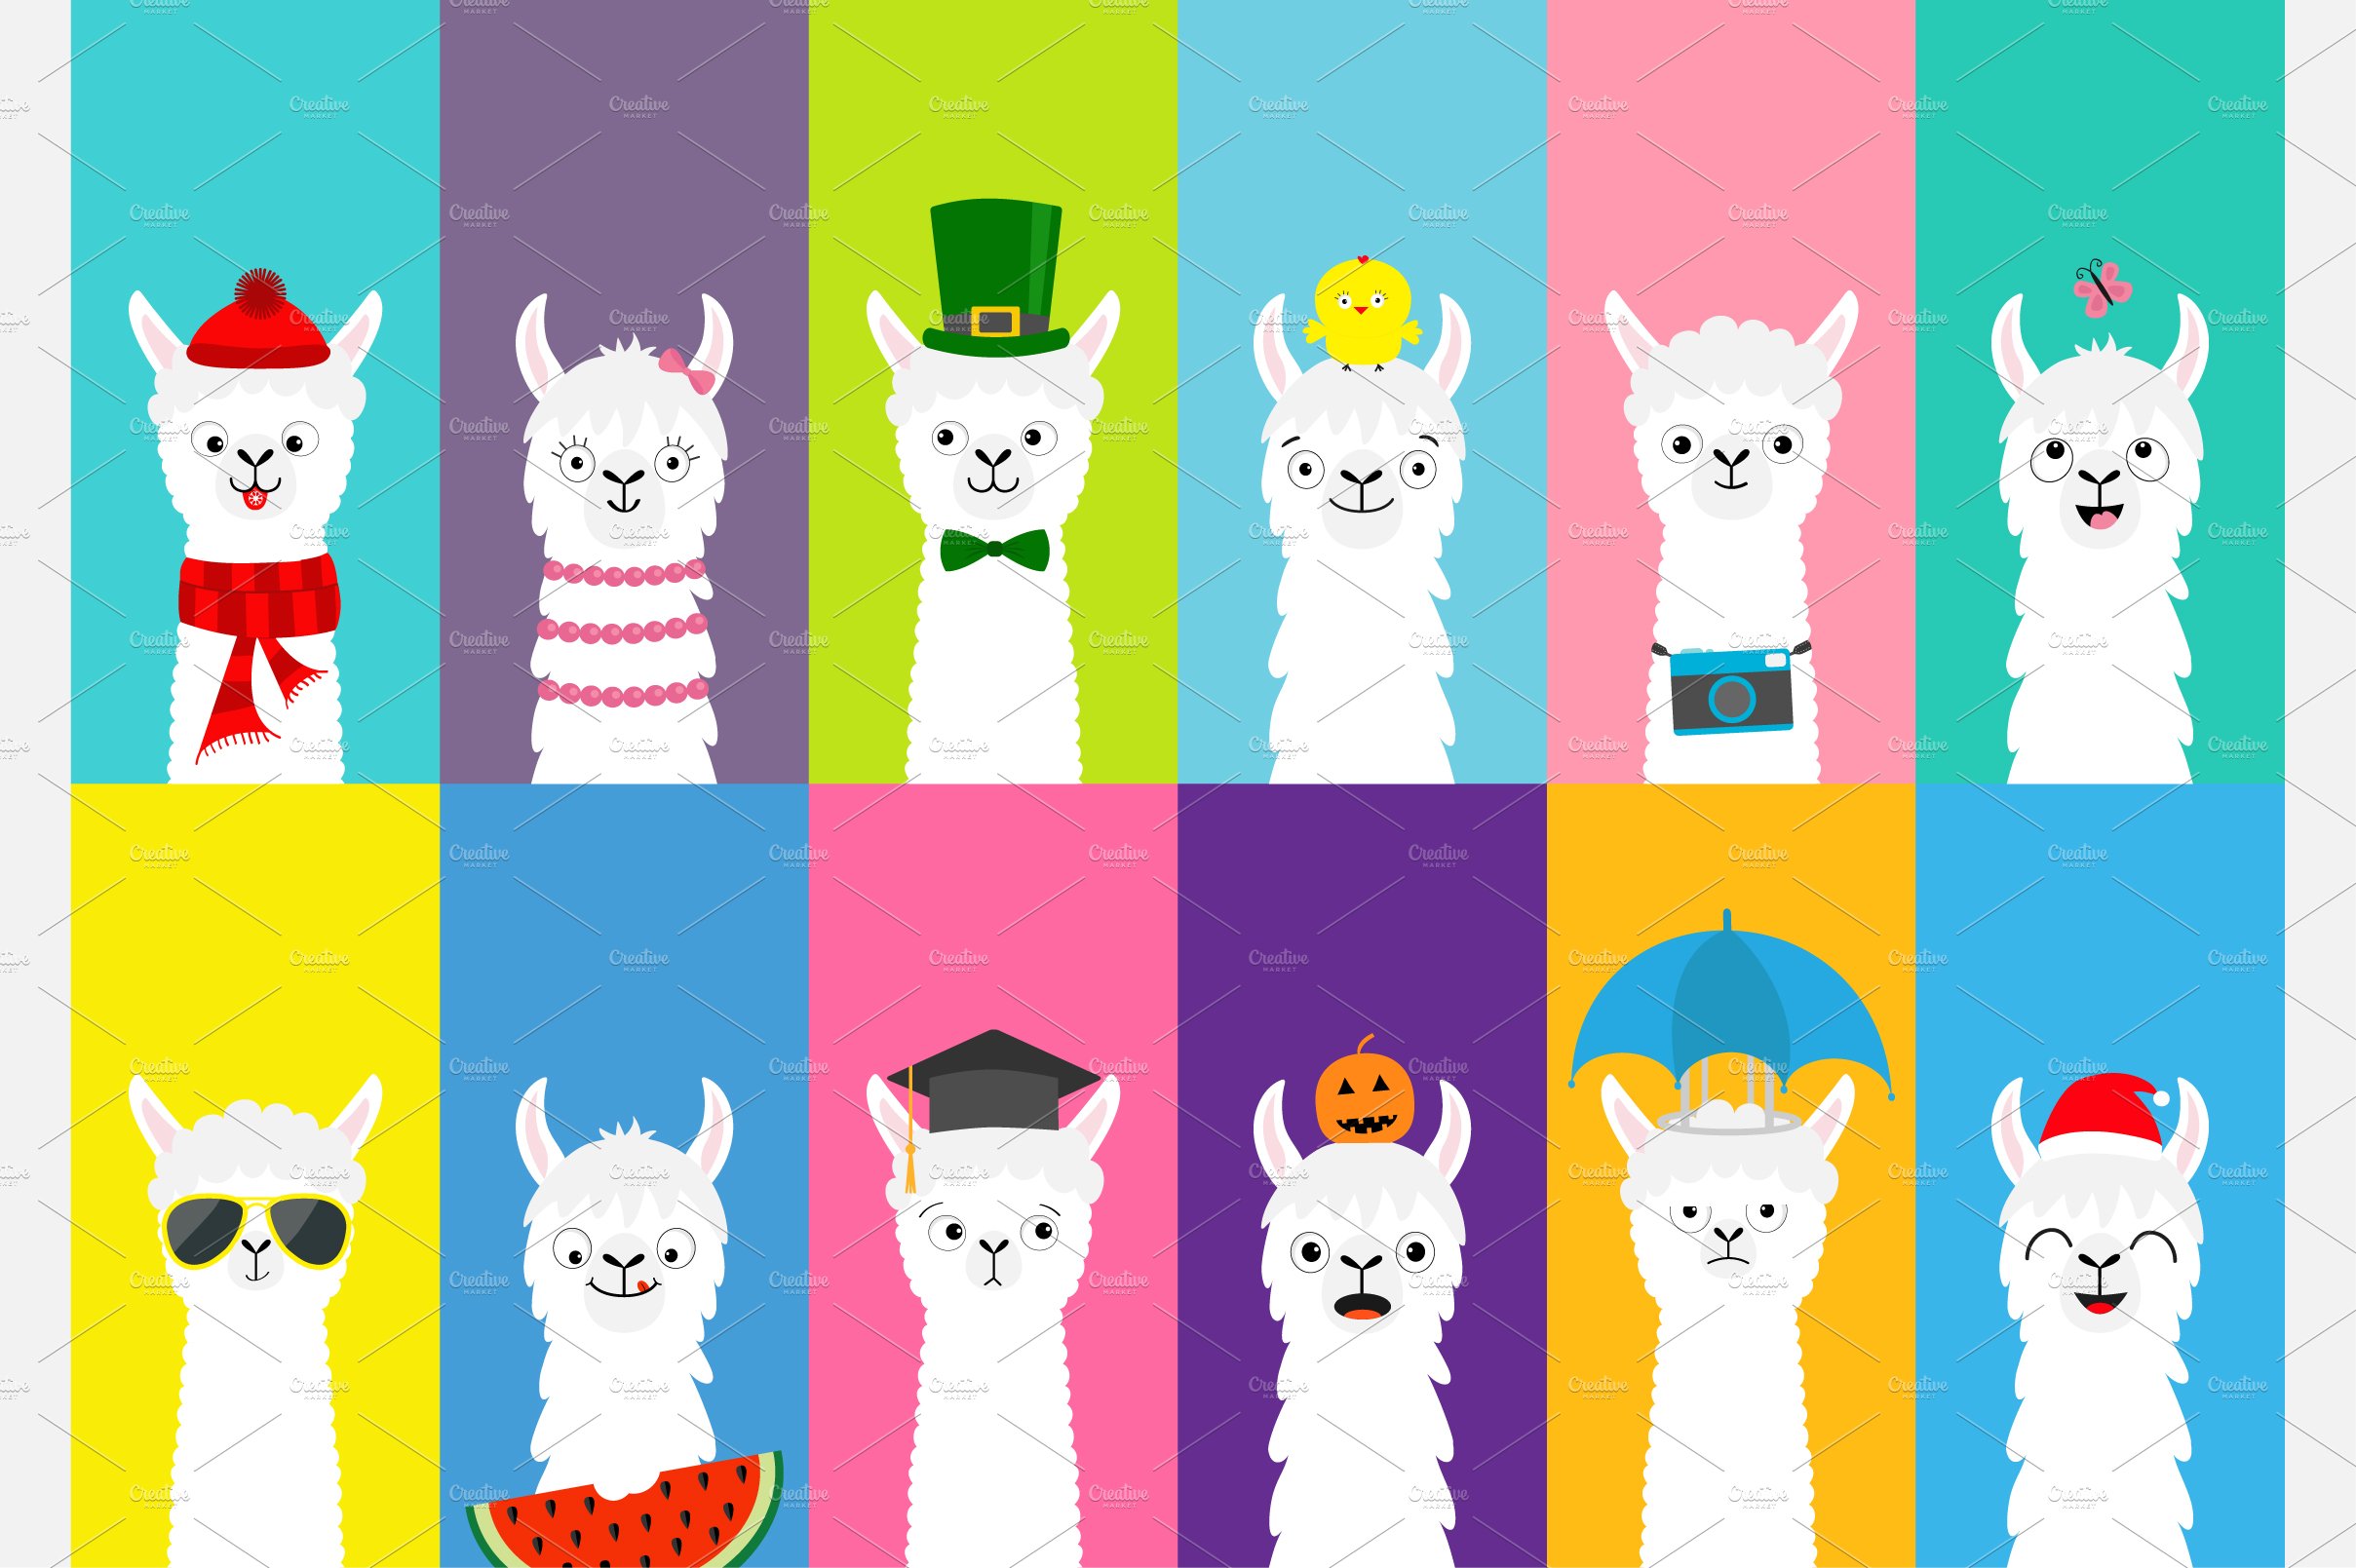 Llama alpaca set. All seasons. cover image.